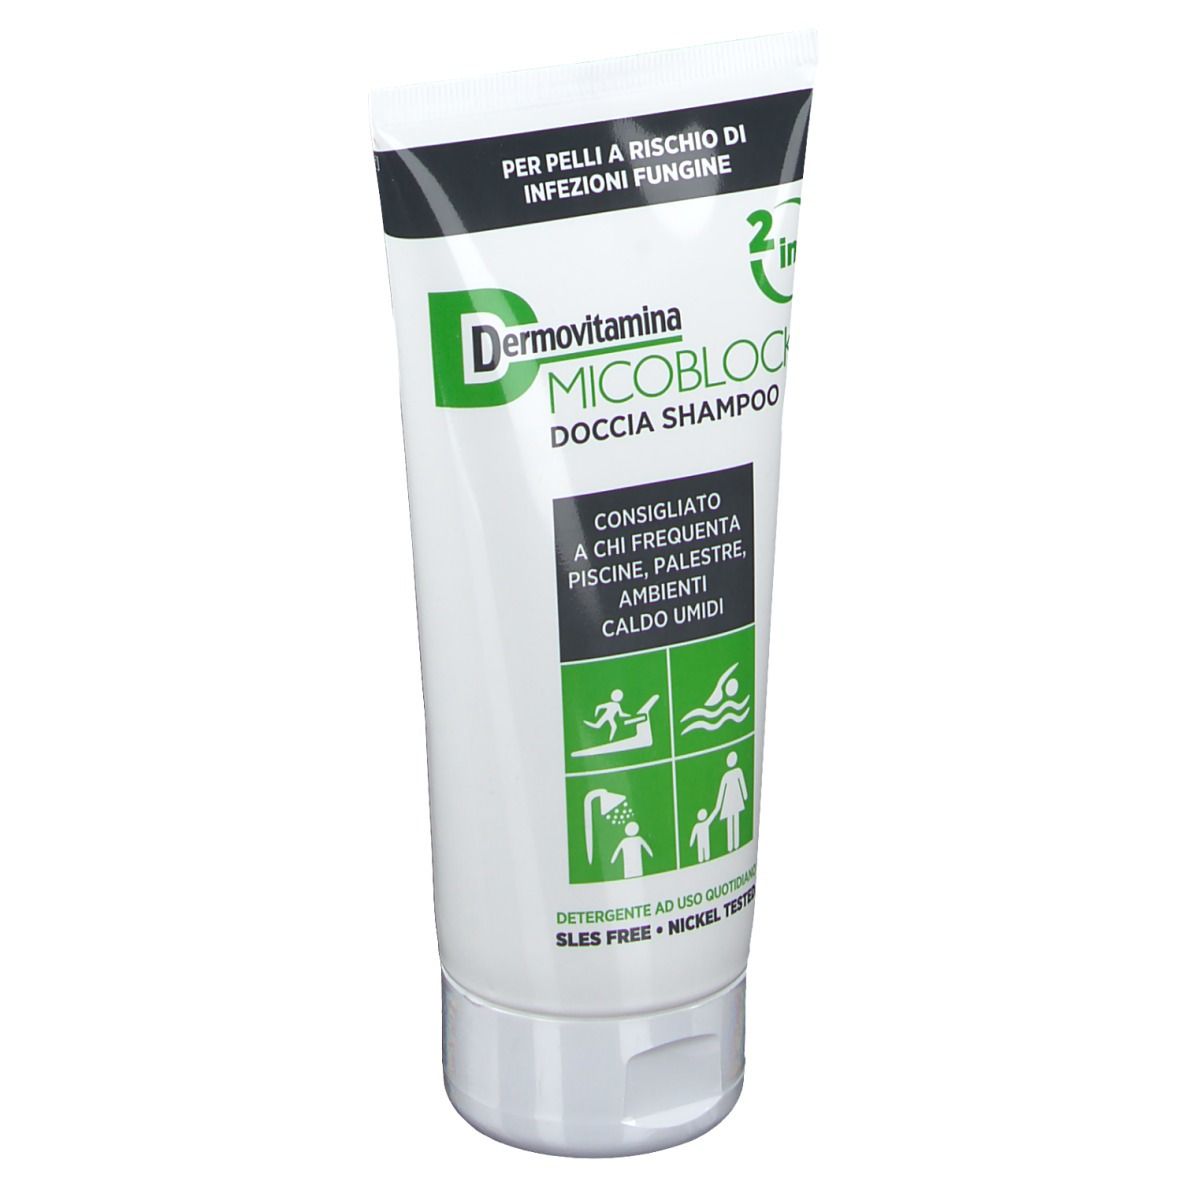 Dermovitamina Micoblock® Doccia Shampoo